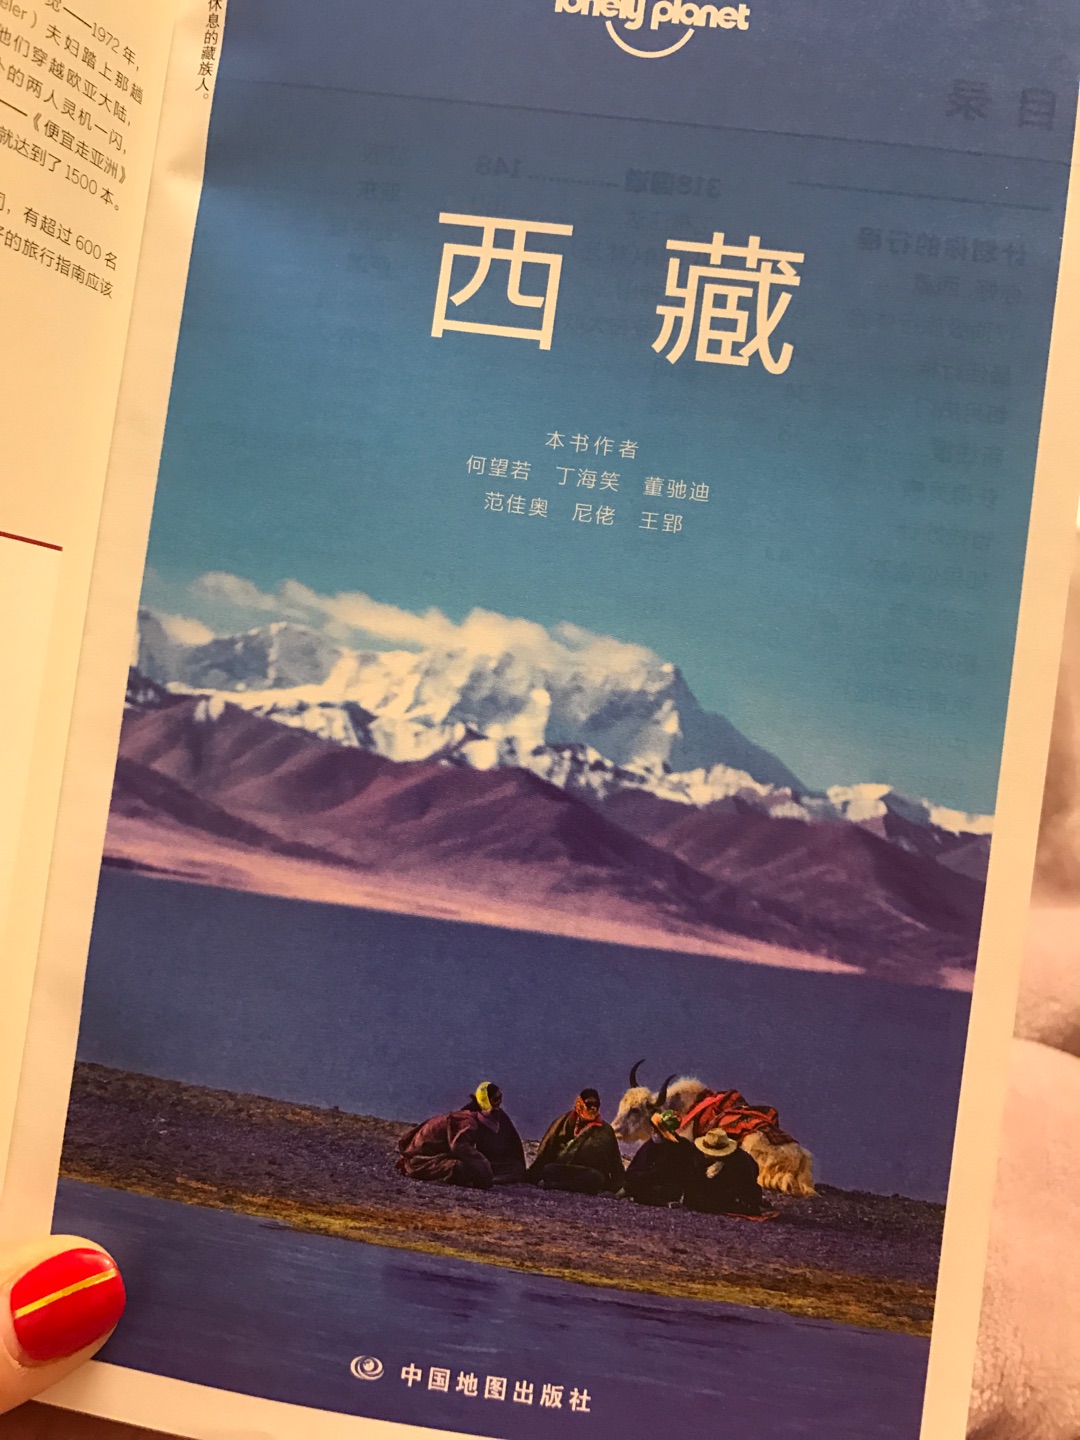 2012年一本lonelyplant四川开启穷游之旅，说走就走去了向往的亚丁，走过318，后面几年的旅行再没有当时的感受，期待这本西藏带给我更好的体验。